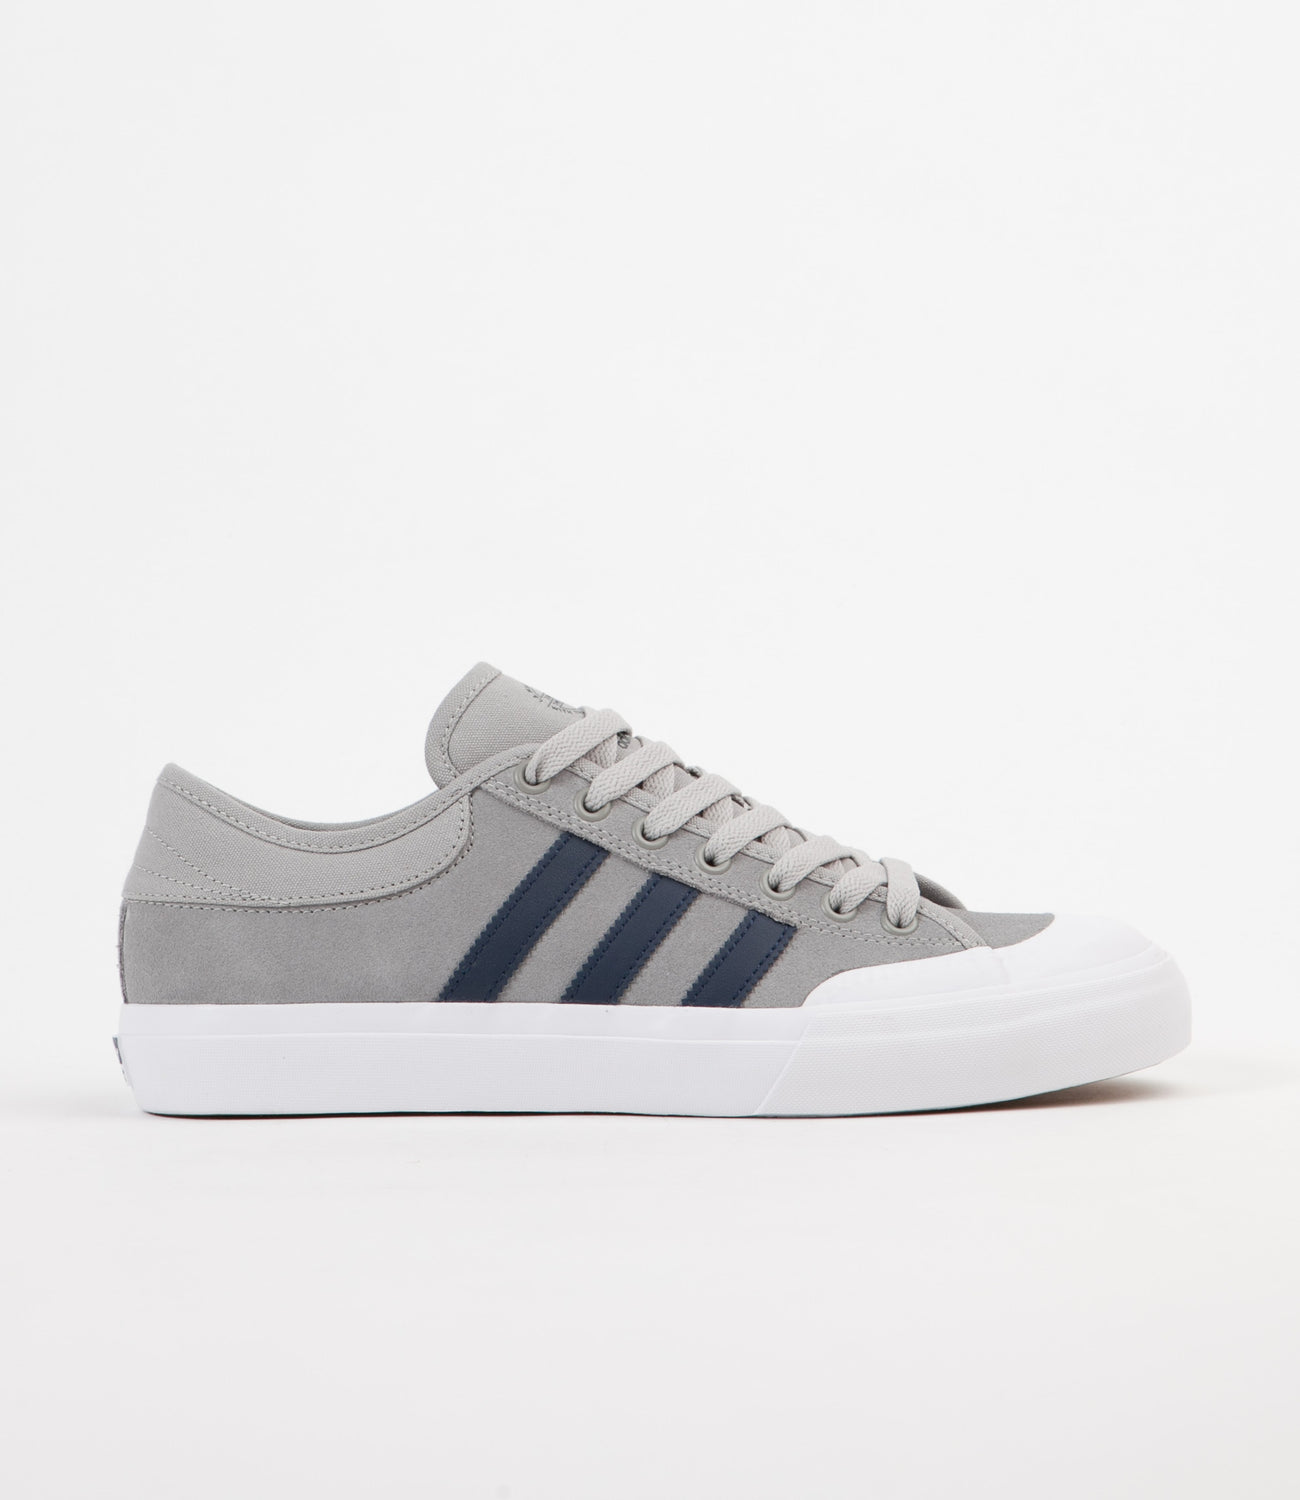 registreren Dreigend serveerster Adidas Matchcourt Shoes - Solid Grey / Collegiate Navy / White | Flatspot